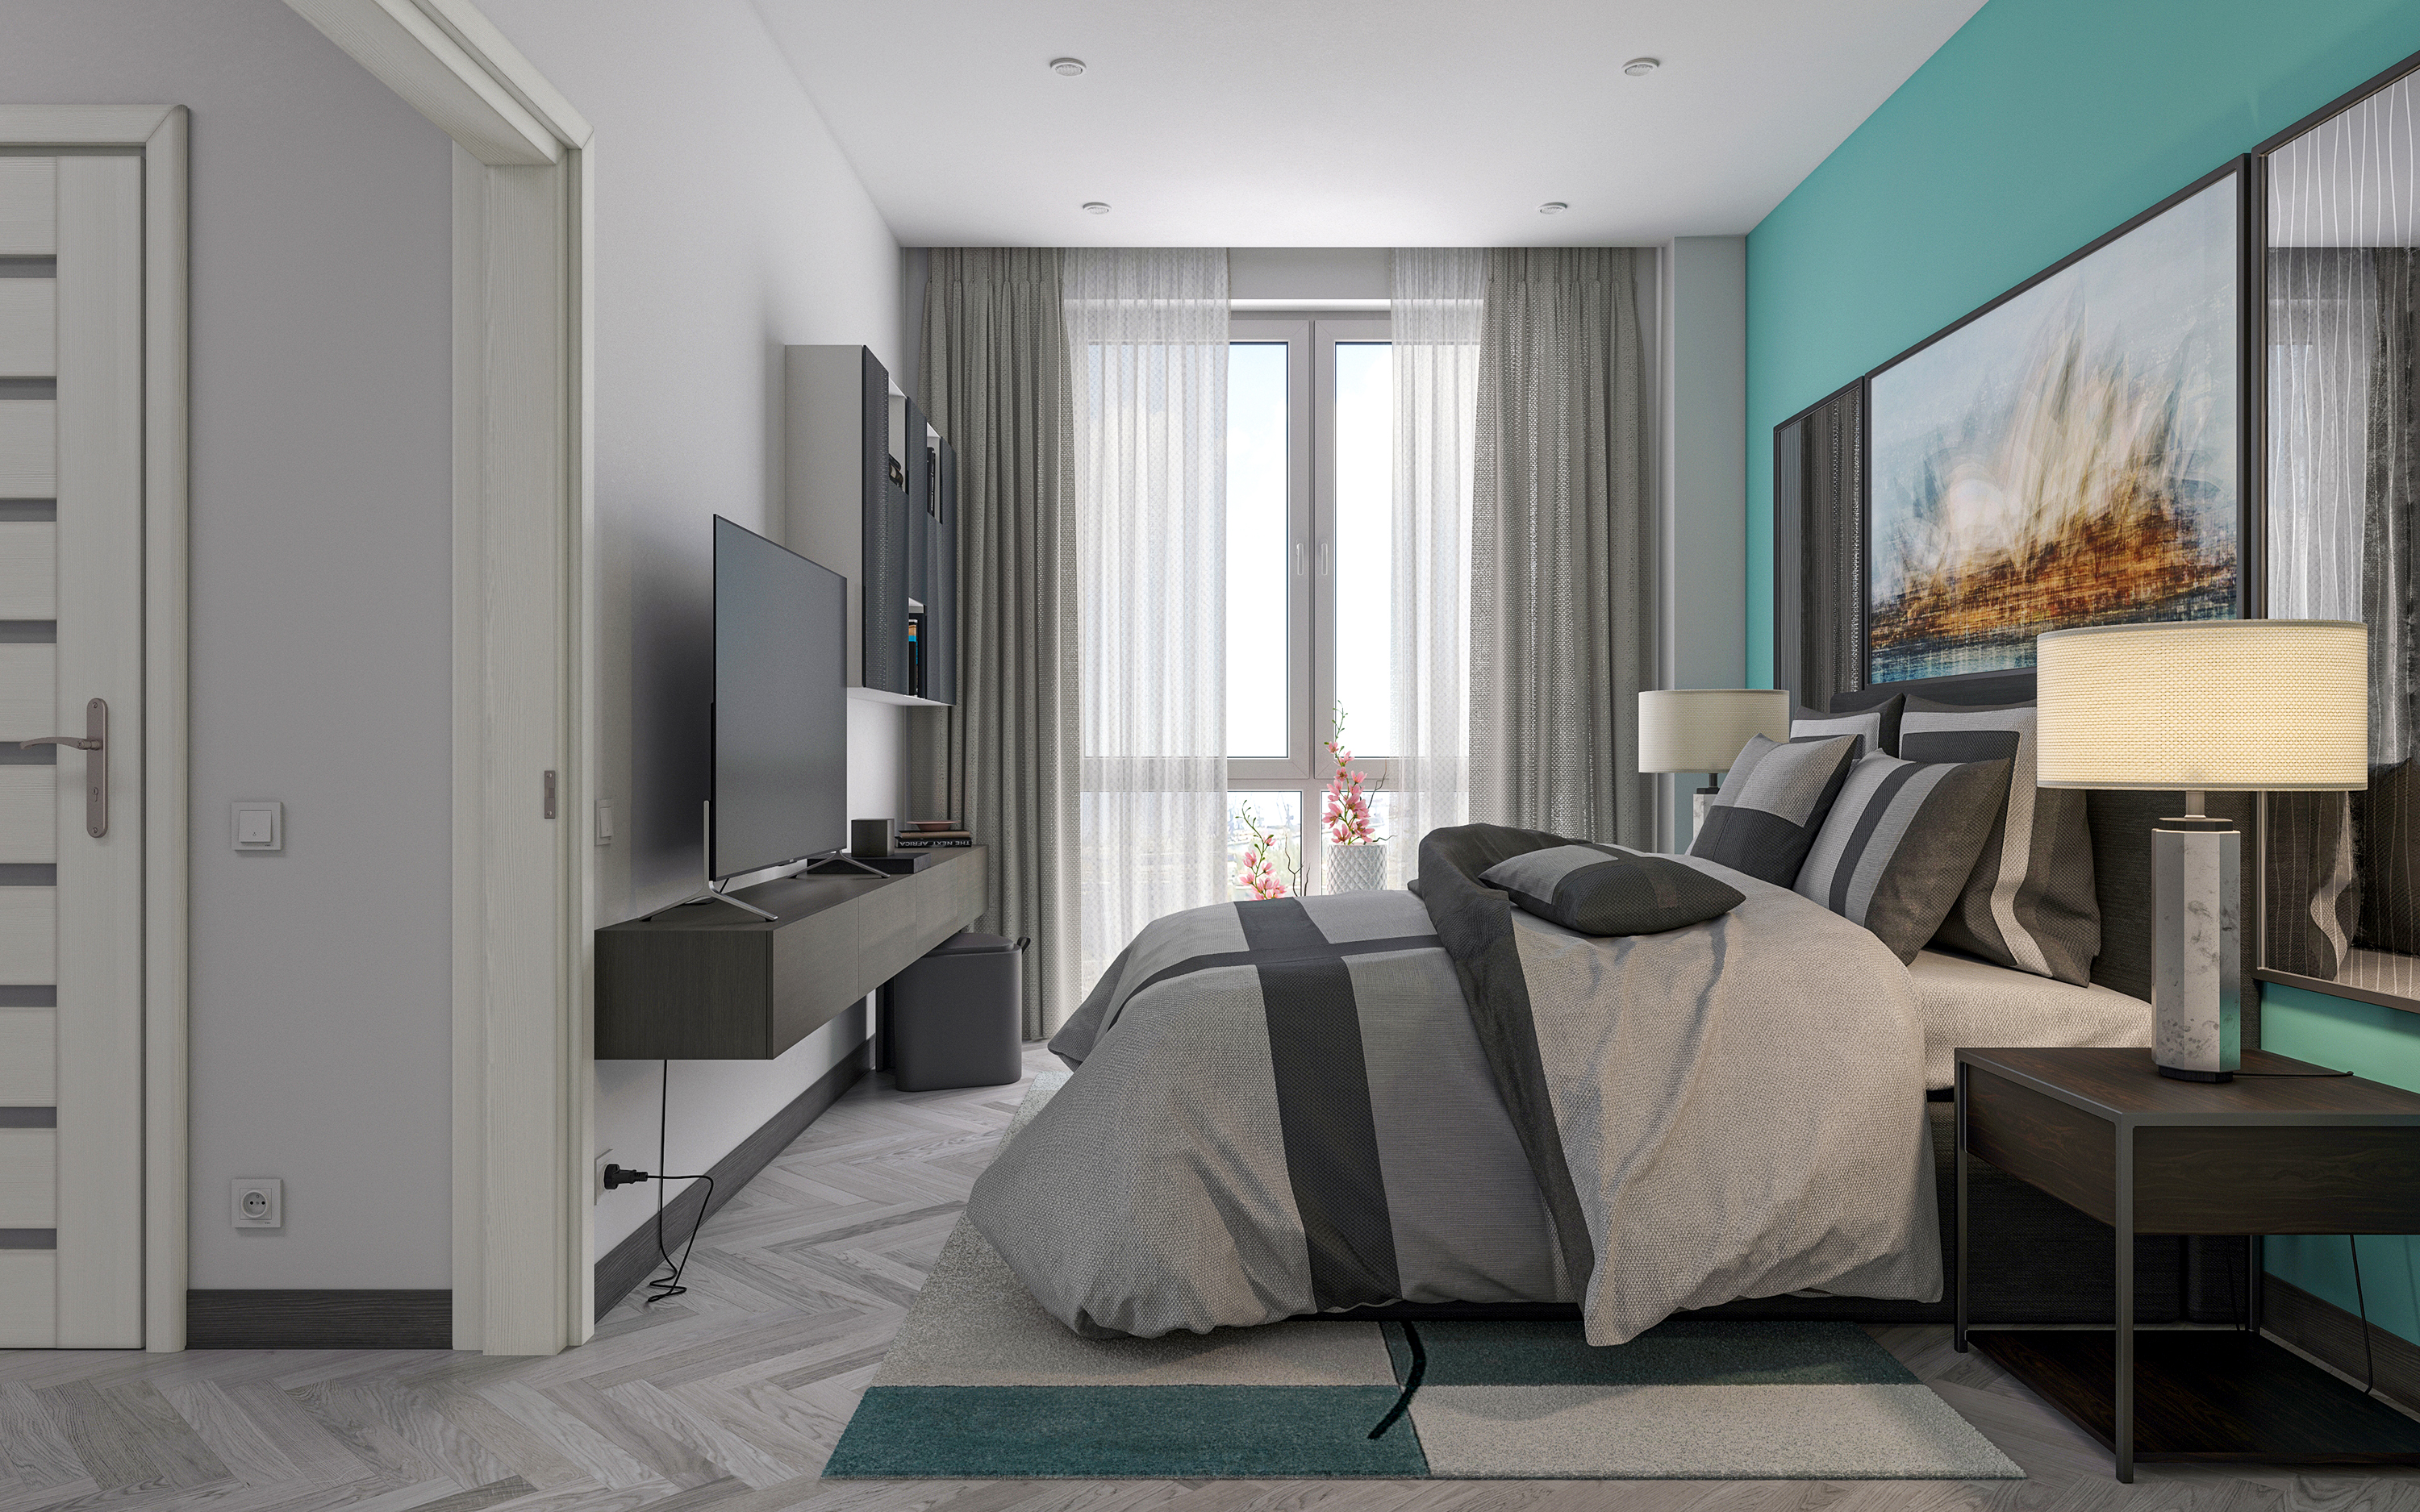 एक बेडरूम का अपार्टमेंट S66 3d max corona render में प्रस्तुत छवि